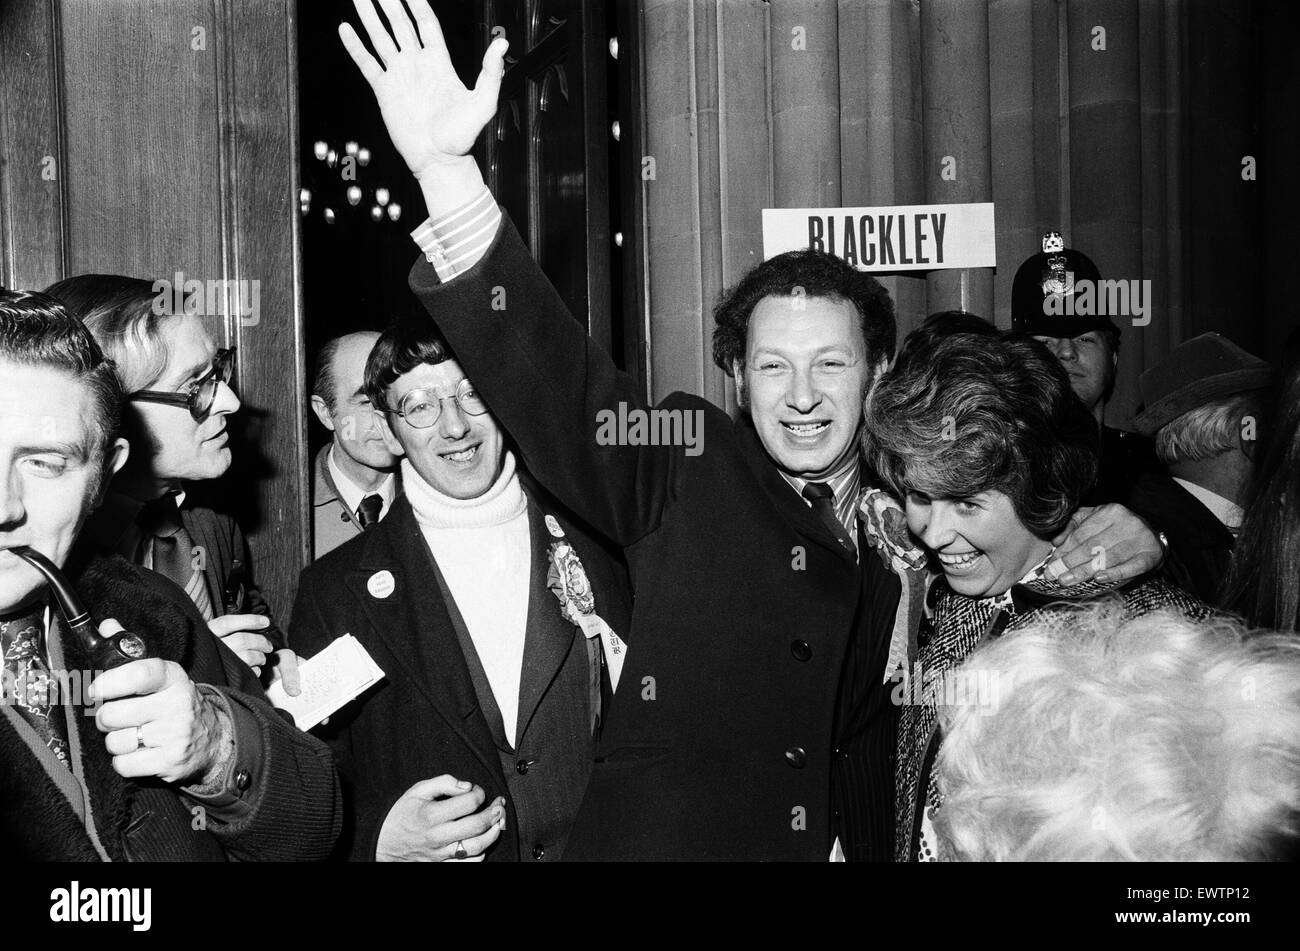 Paolo Rosa MP, celebra dopo aver vinto, continua a rappresentare la manodopera come membro del Parlamento per Manchester Blackley, raffigurato con i sostenitori, Manchester, 28 febbraio 1974. Foto Stock